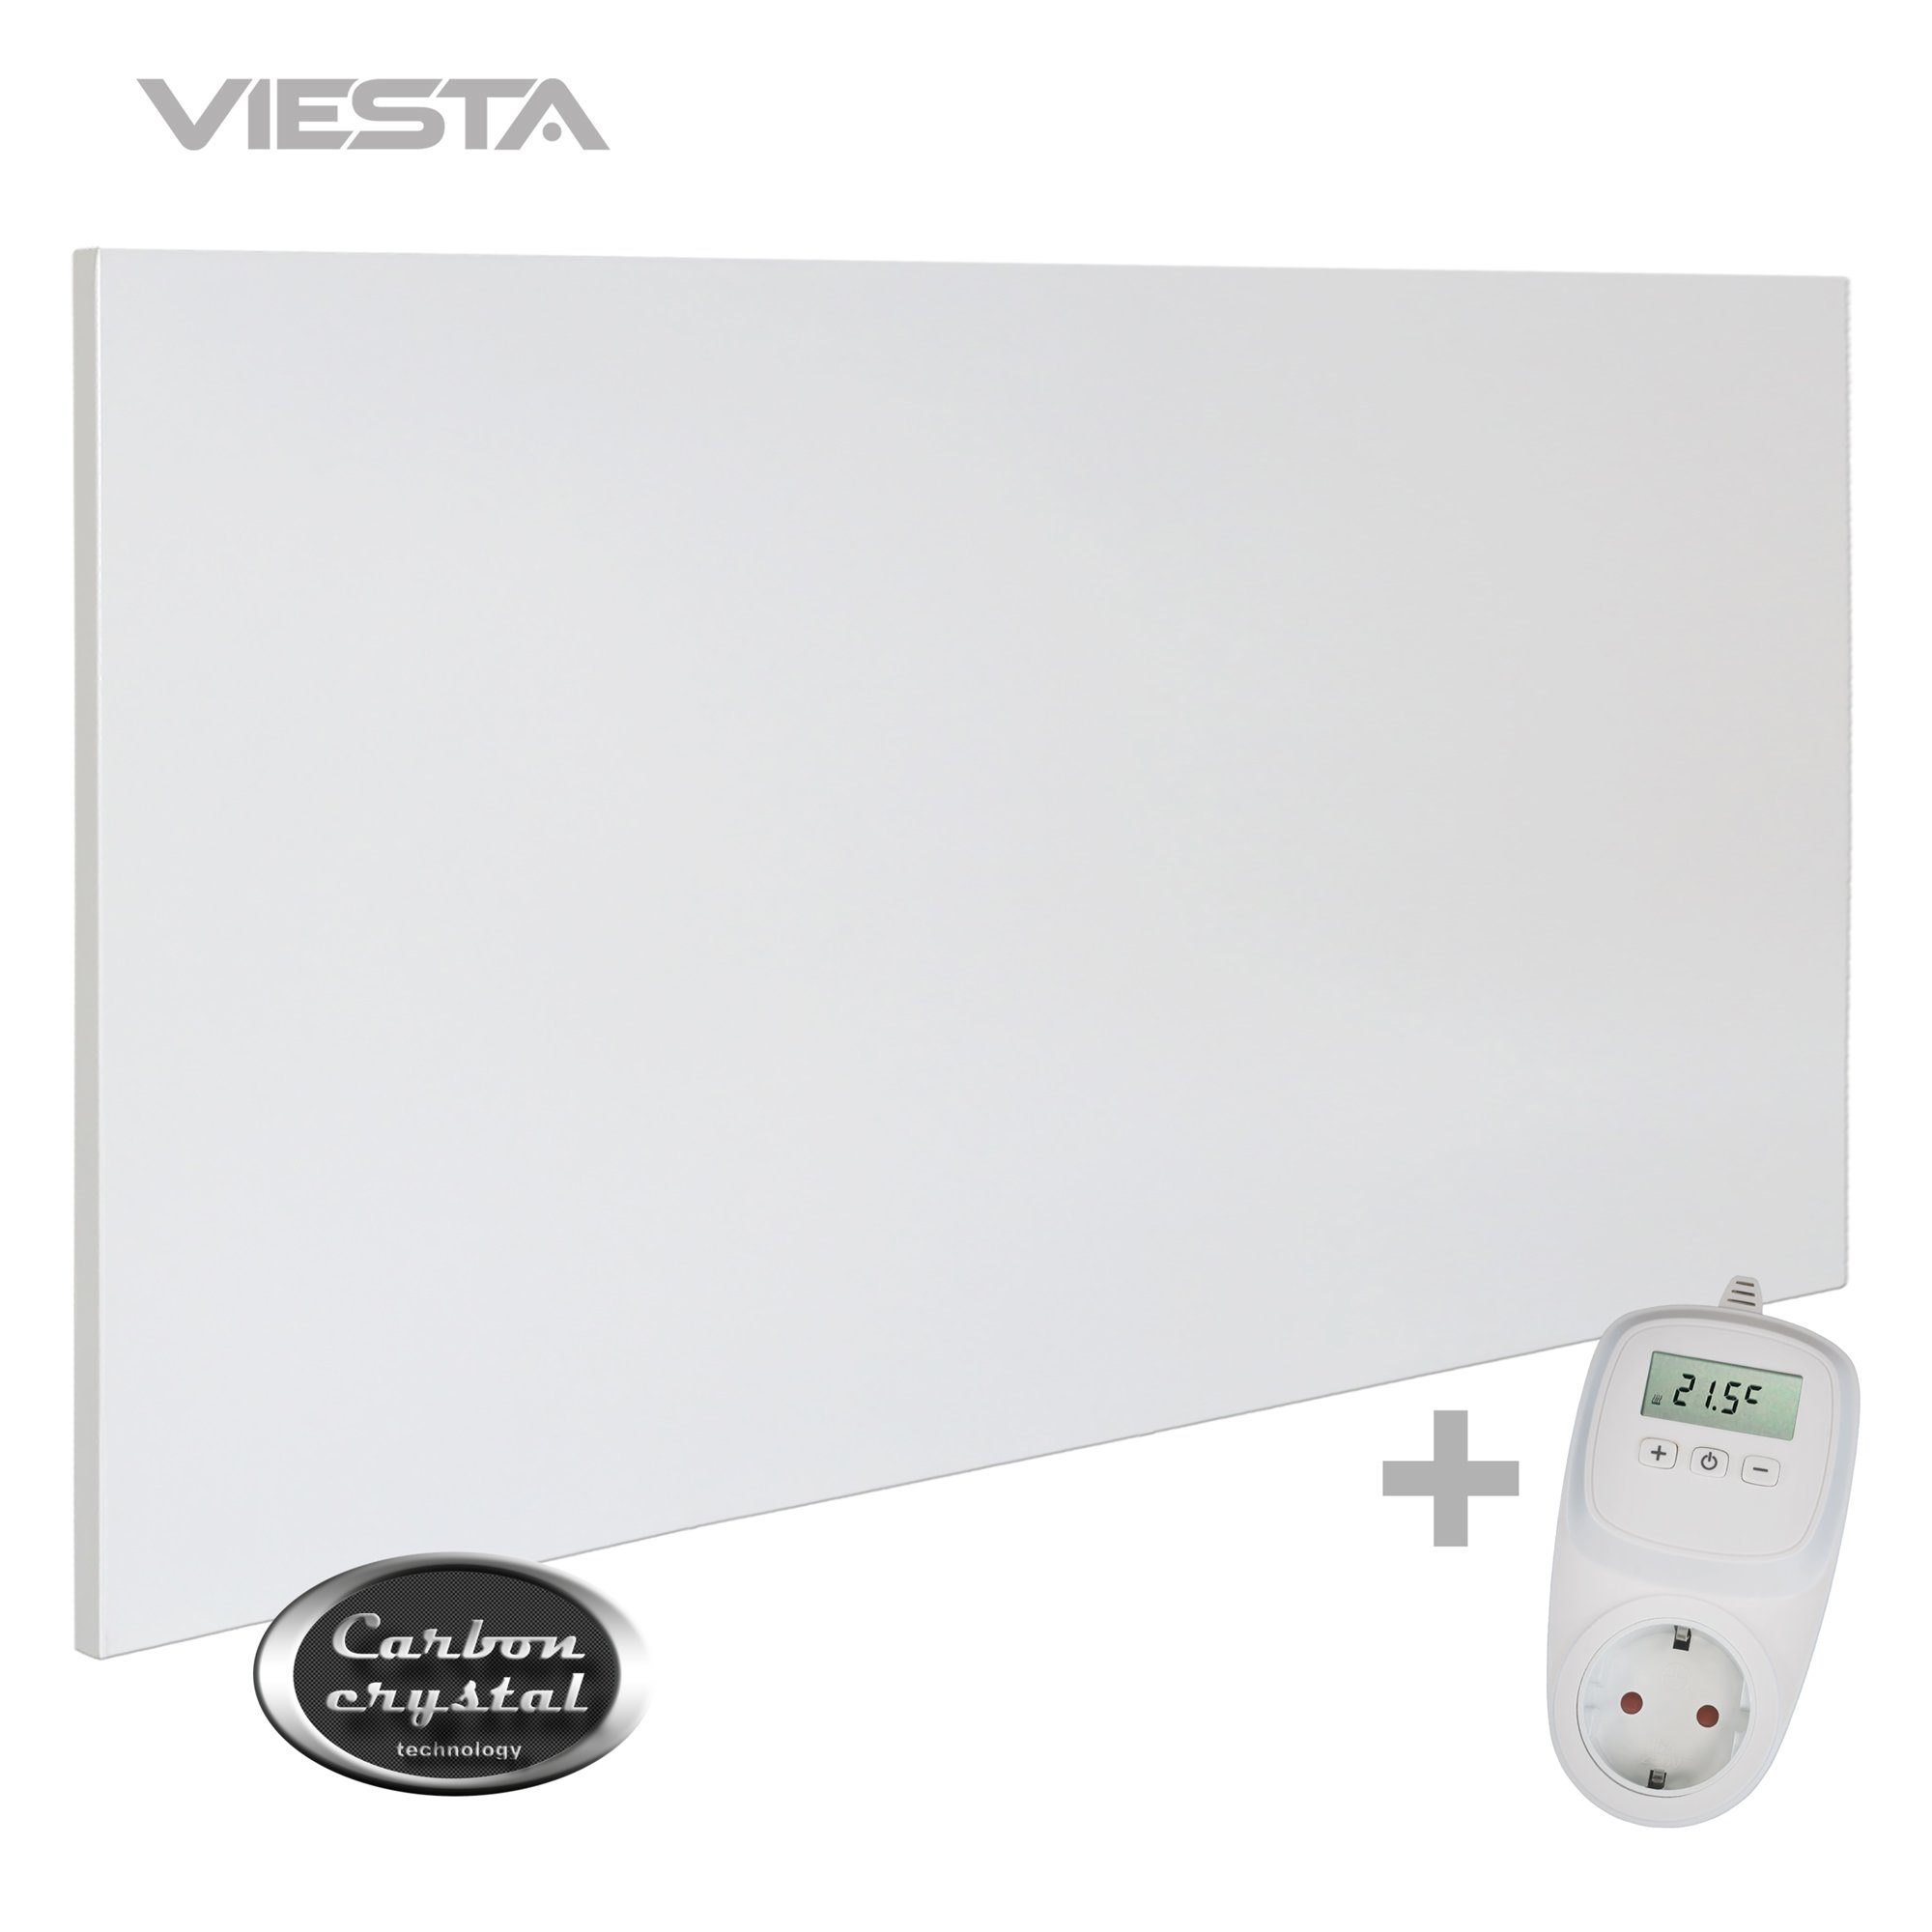 VIESTA ohne ultraflache Thermostat Watt, Technologie), + TH10, H700 VIESTA Carbon Paneelheizkörper - weiß, 700 (neueste Infrarotheizung TH10 Wandheizung, Crystal H700 VIESTA Rahmen